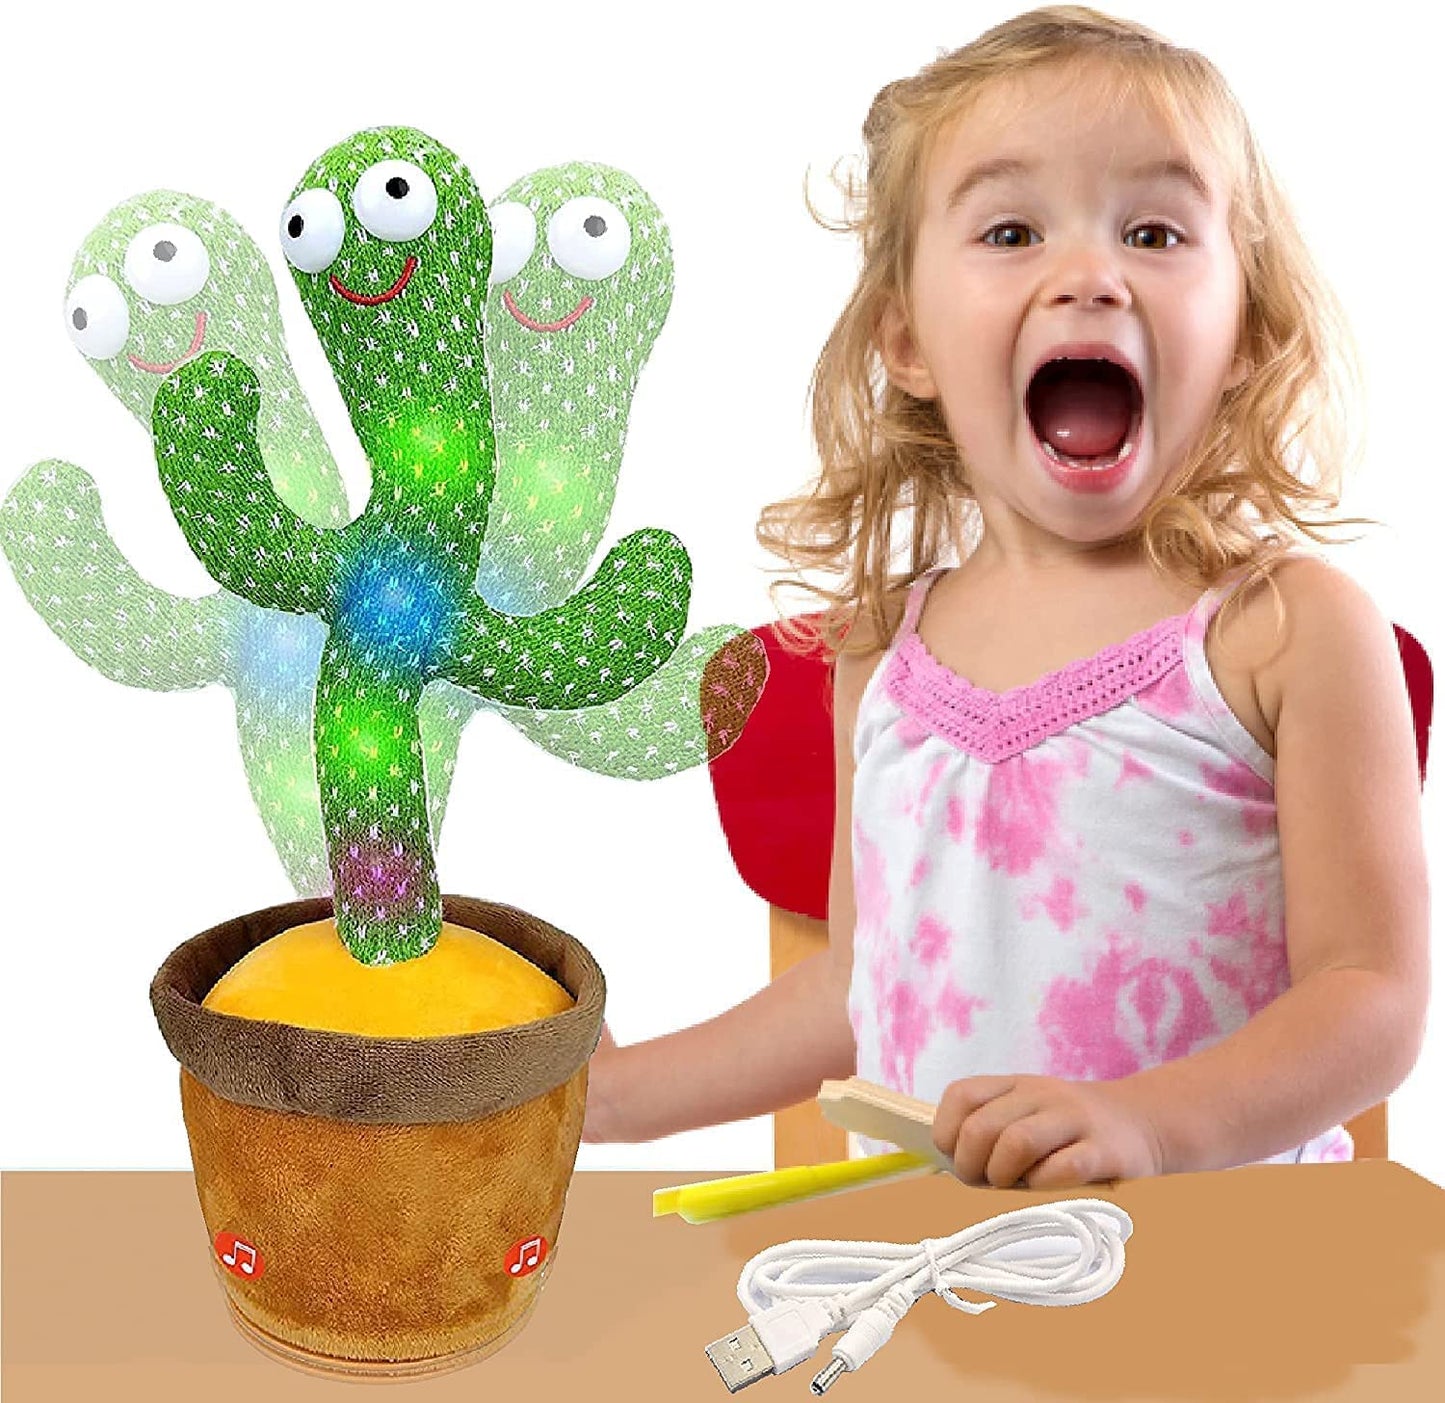 Green Cactus Toy-Dancing, Singing, Repeating